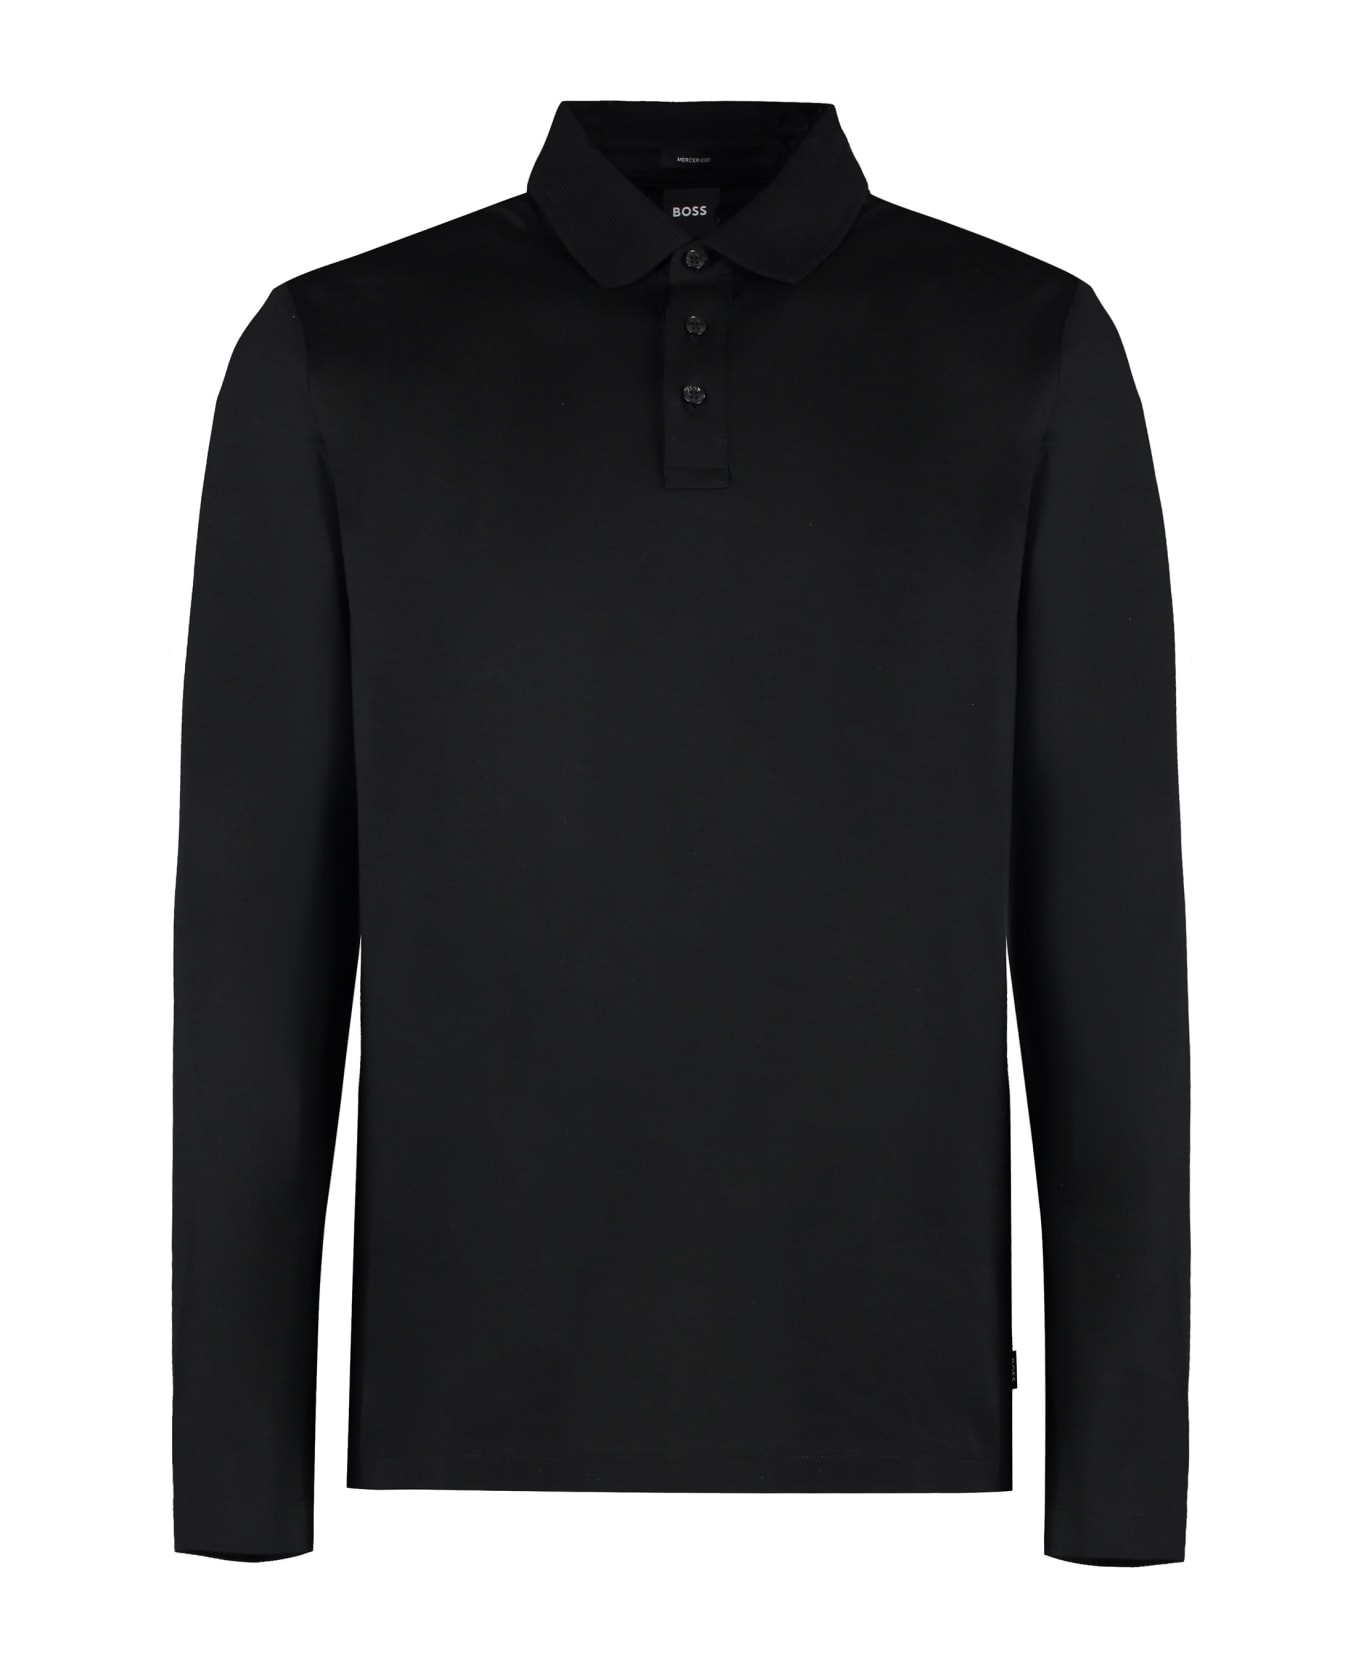 Hugo Boss Long Sleeve Cotton Polo Shirt - black ポロシャツ